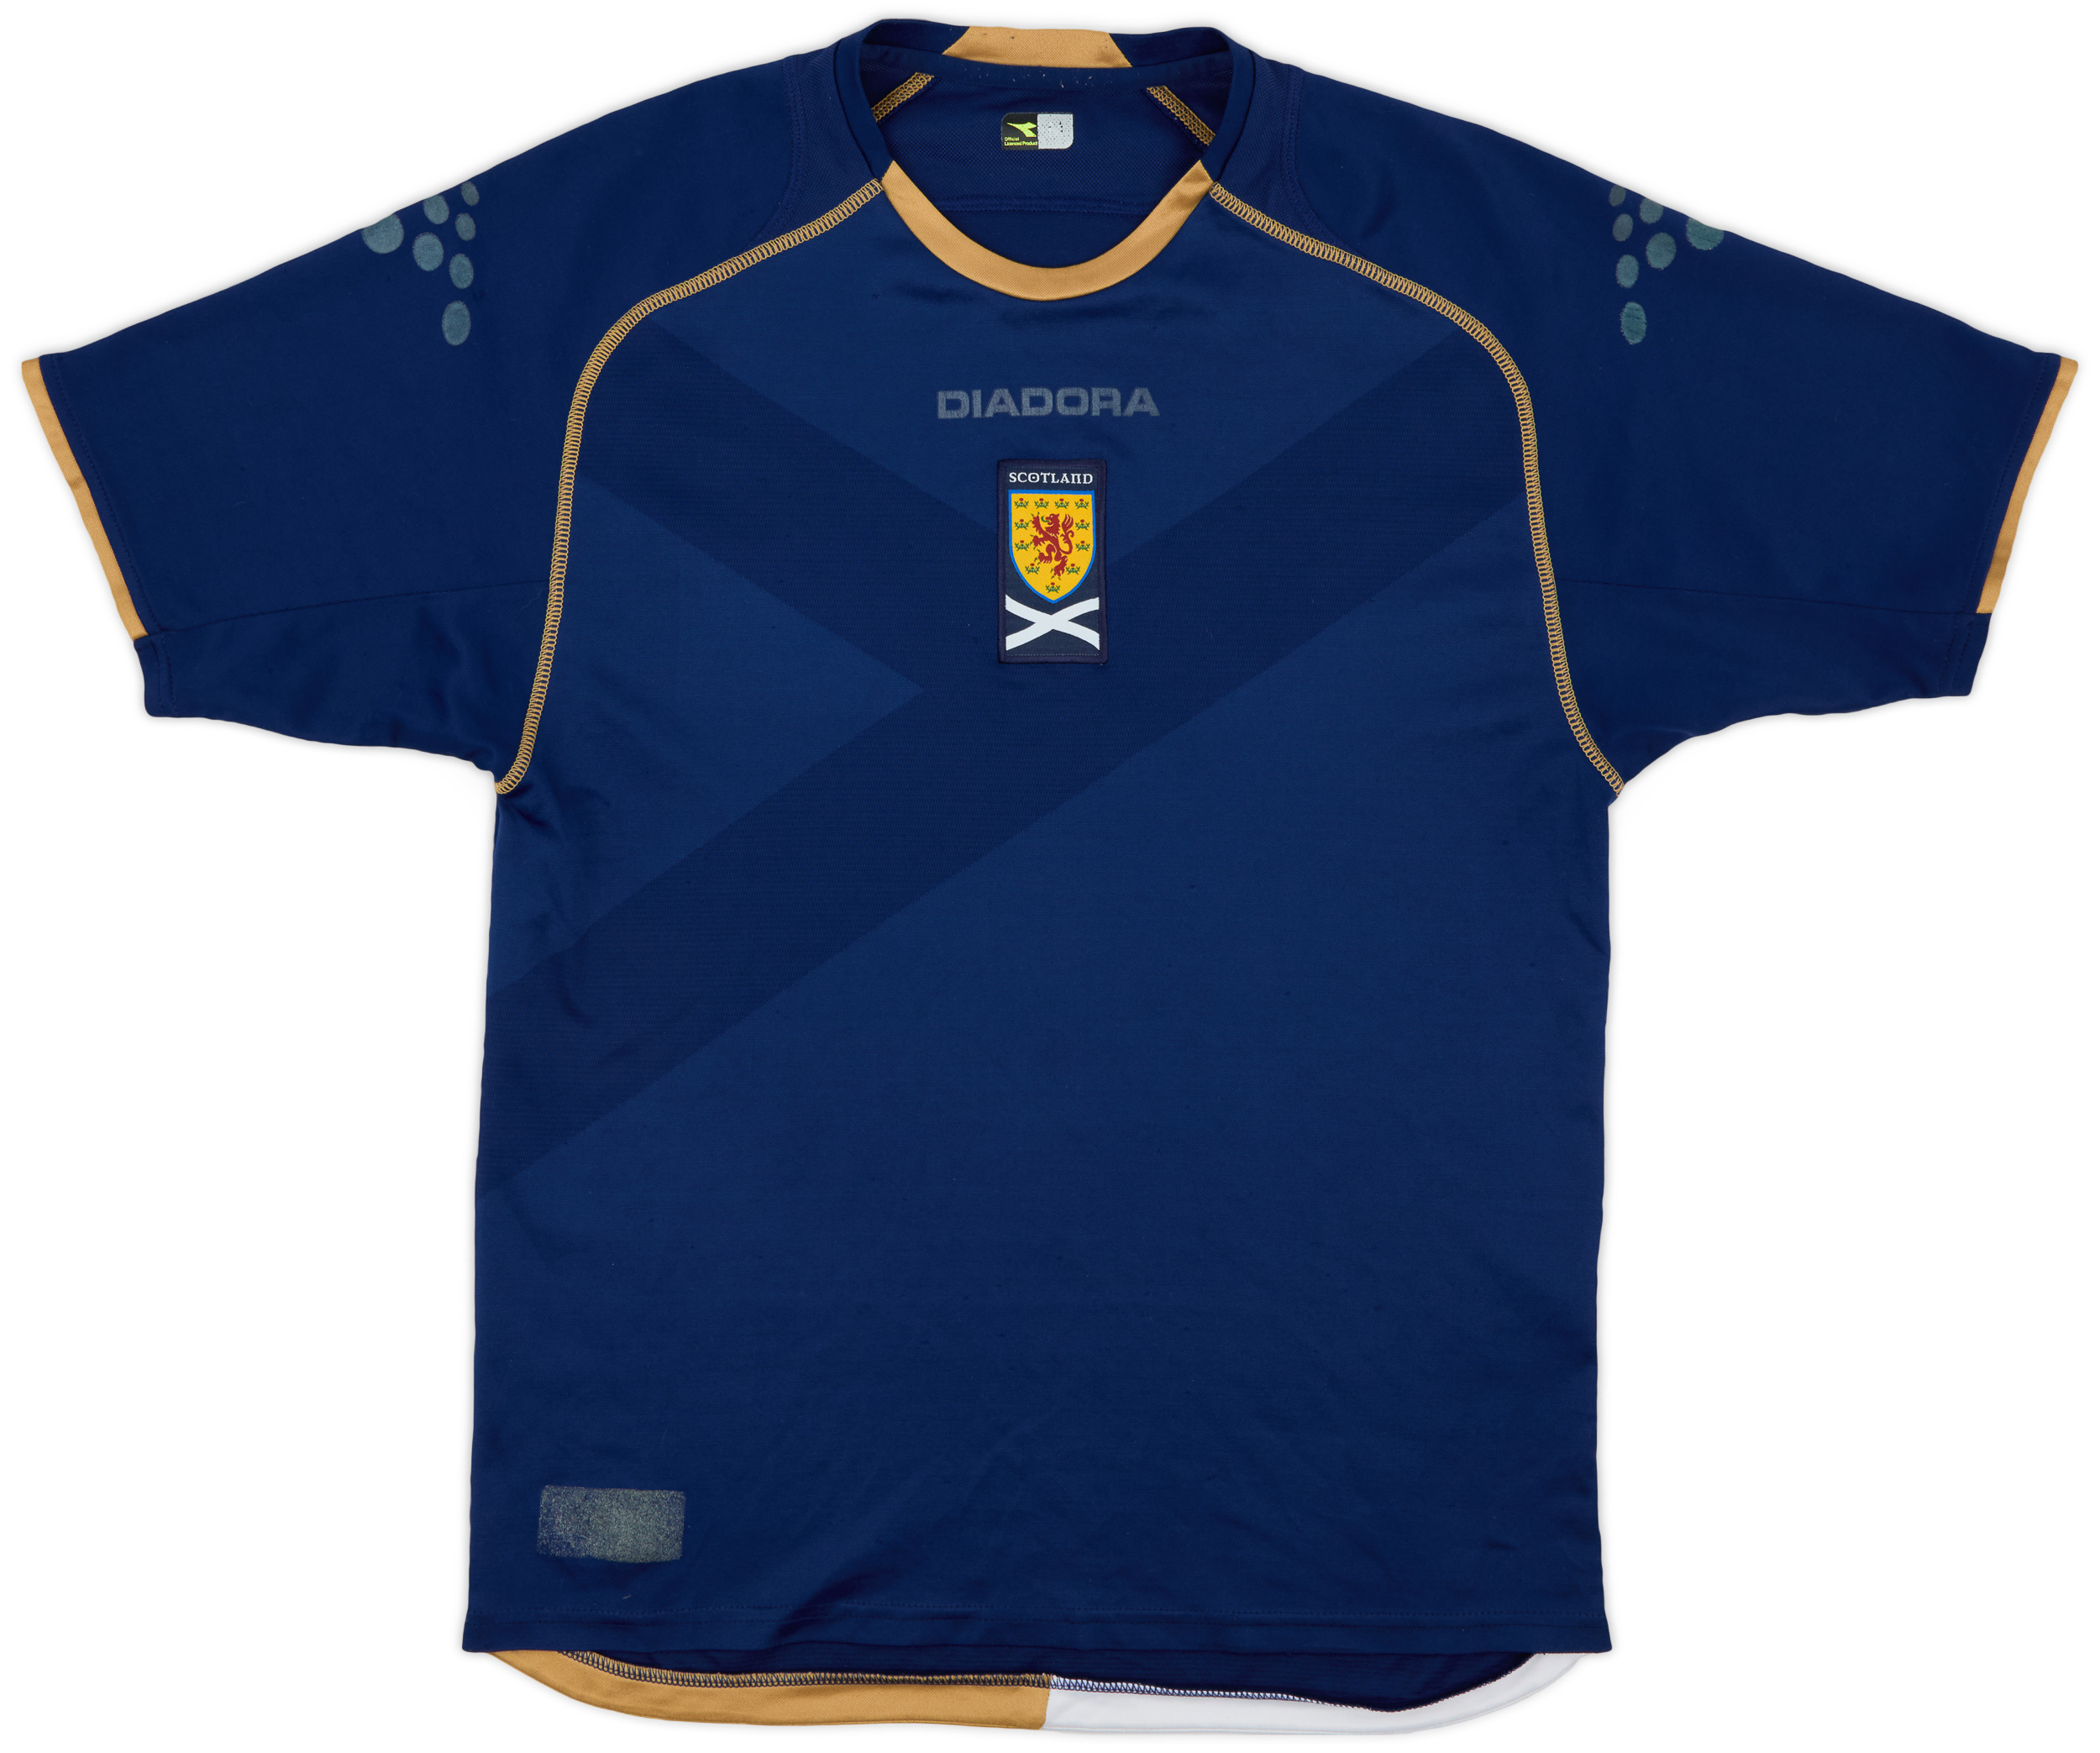 2007-08 Scotland Home Shirt - 5/10 - ()